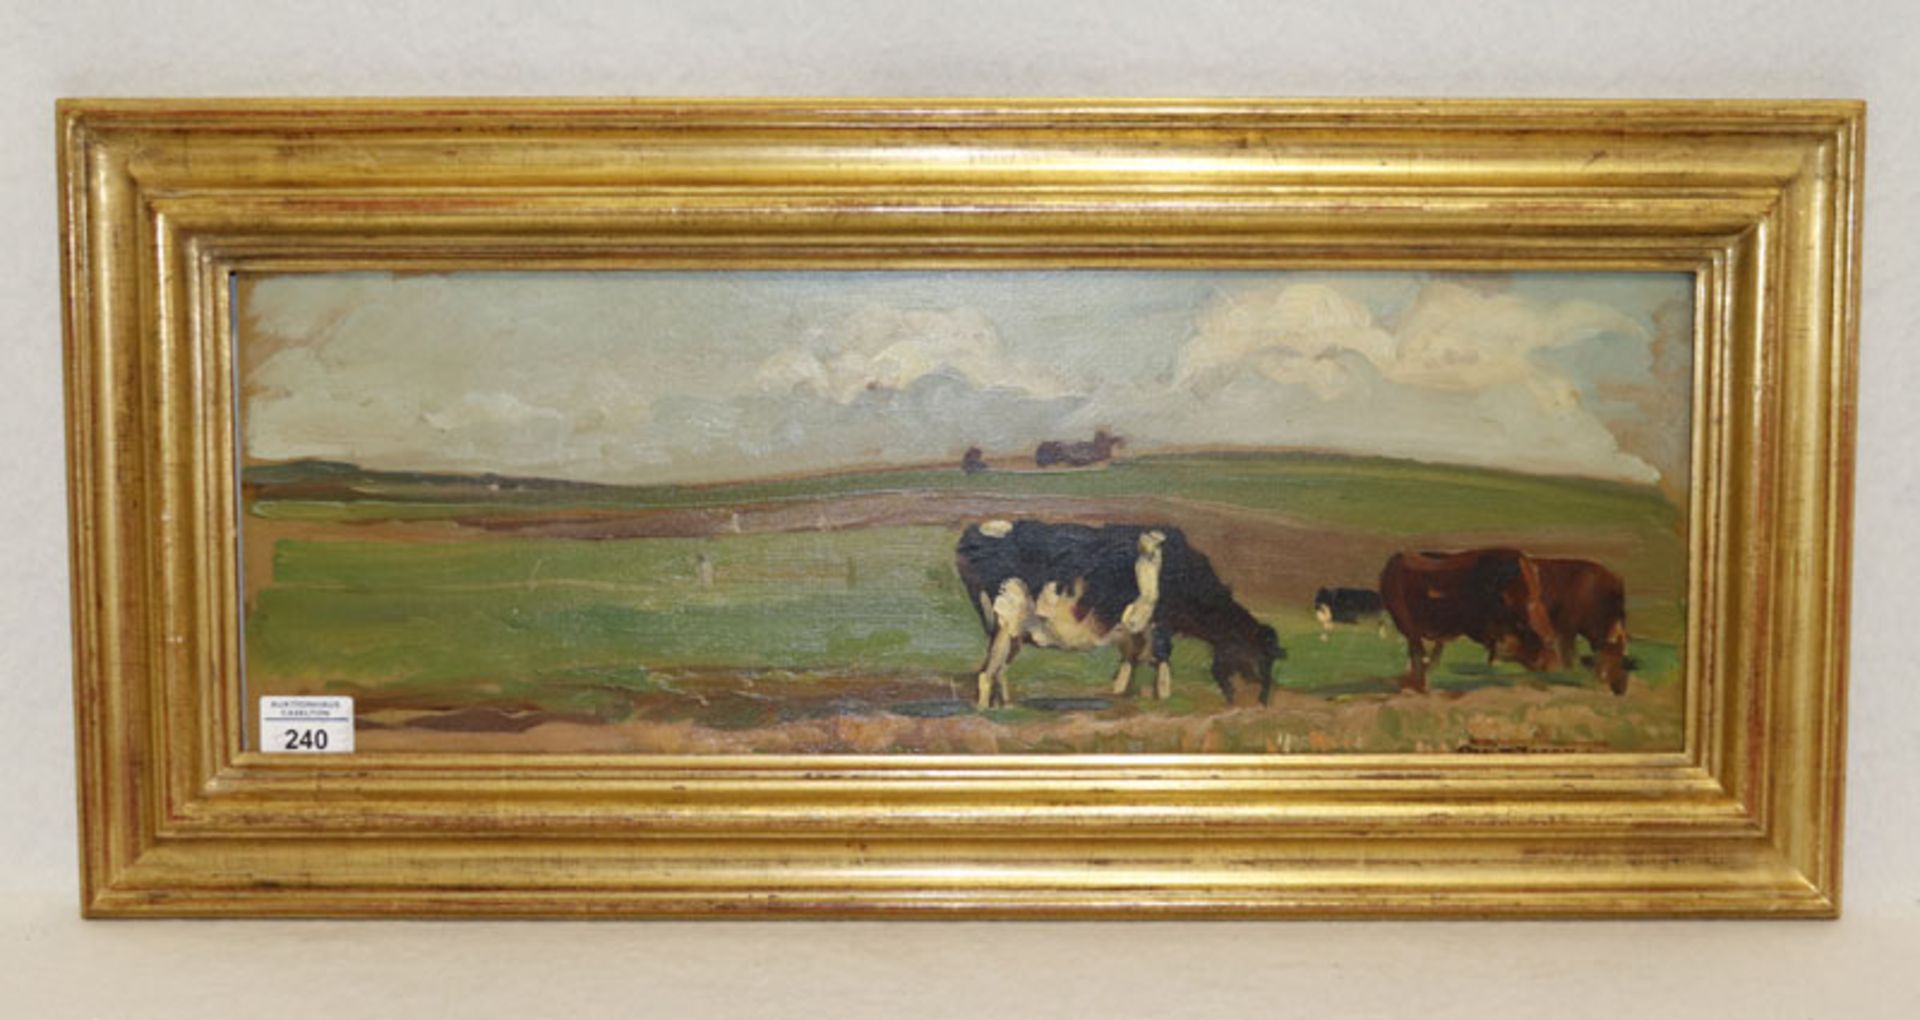 Gemälde ÖL/Malkarton 'Weidelandschaft mit Kühe', signiert Rent Looschen, * 1893 Berlin + 1945